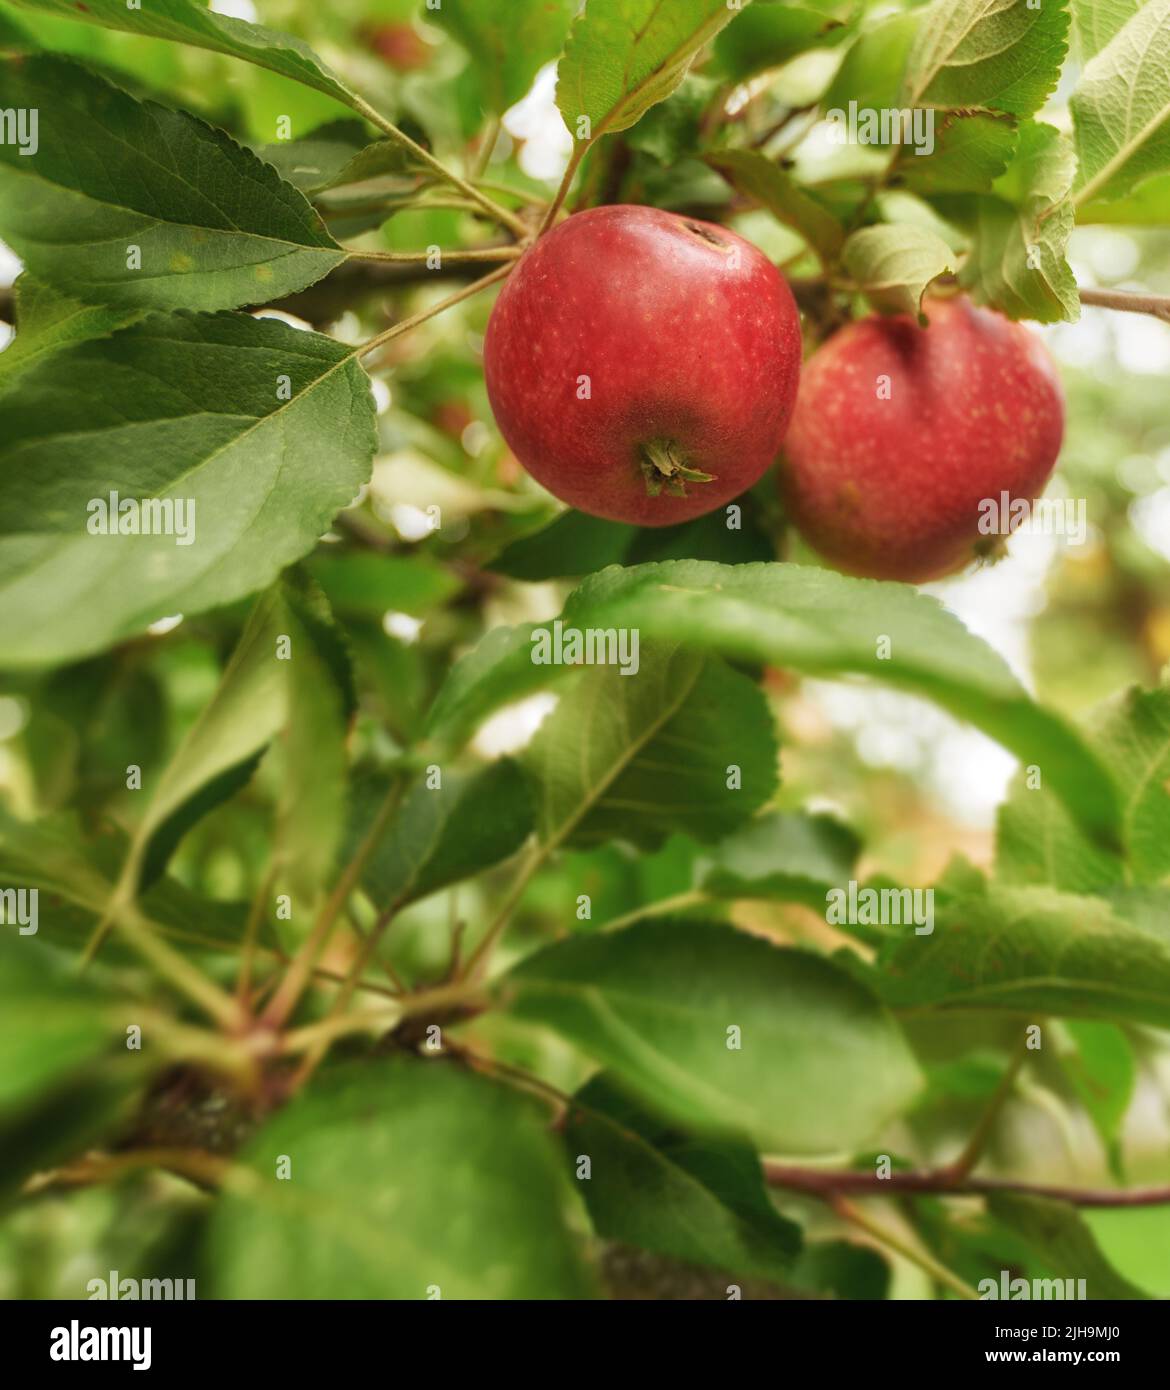 Nahaufnahme von frischen roten Äpfeln, gesunde und leckere Snack-Früchte für Ernährung, Ernährung oder Vitamine. Apfelbaum auf nachhaltiger Obstplantage in Stockfoto